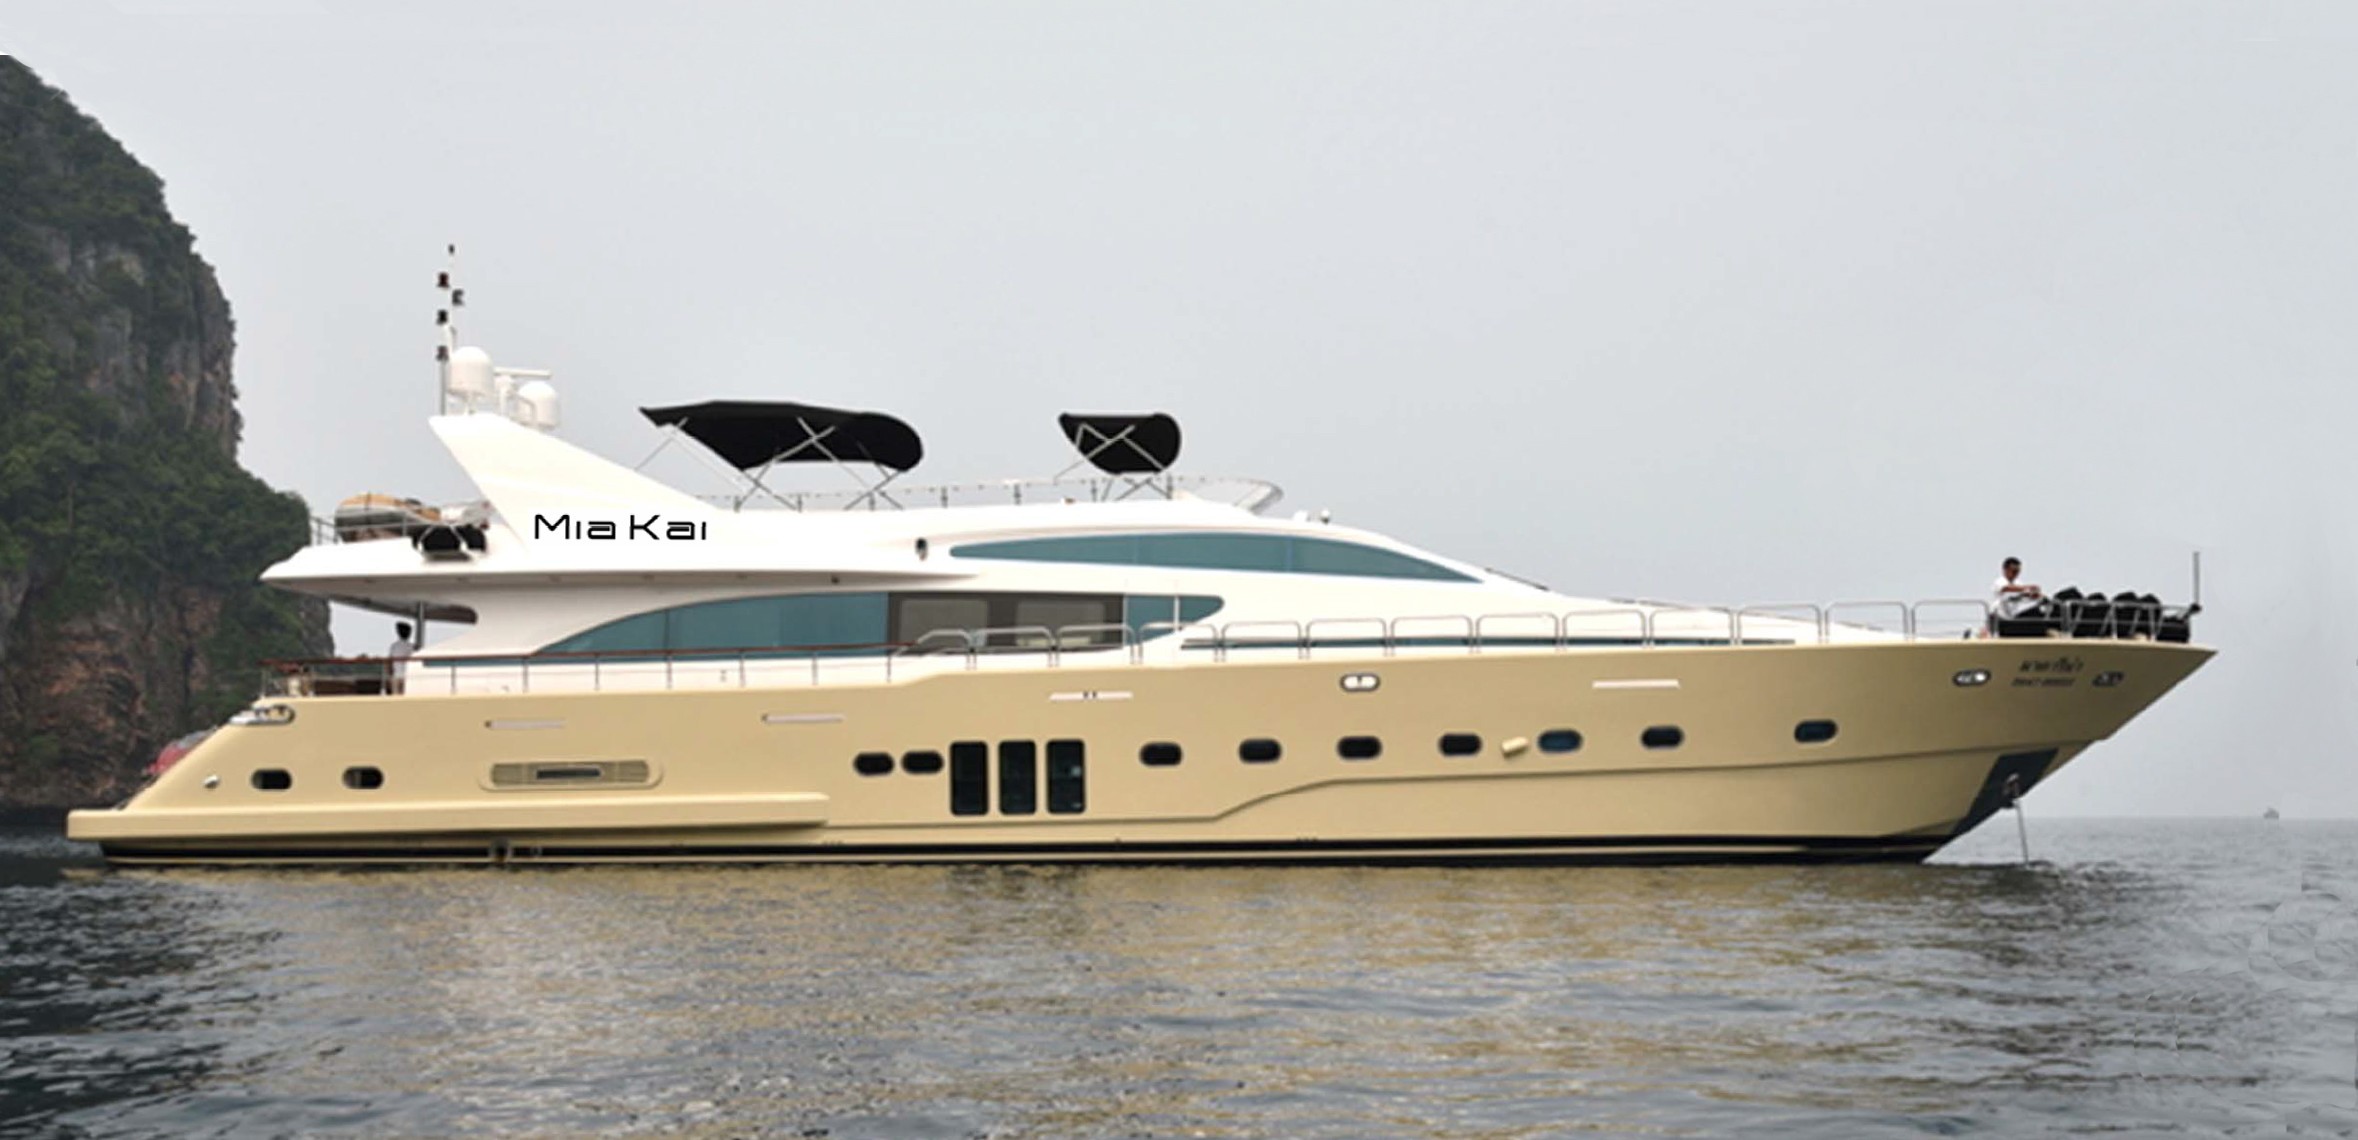 The 29m Yacht MIA KAI